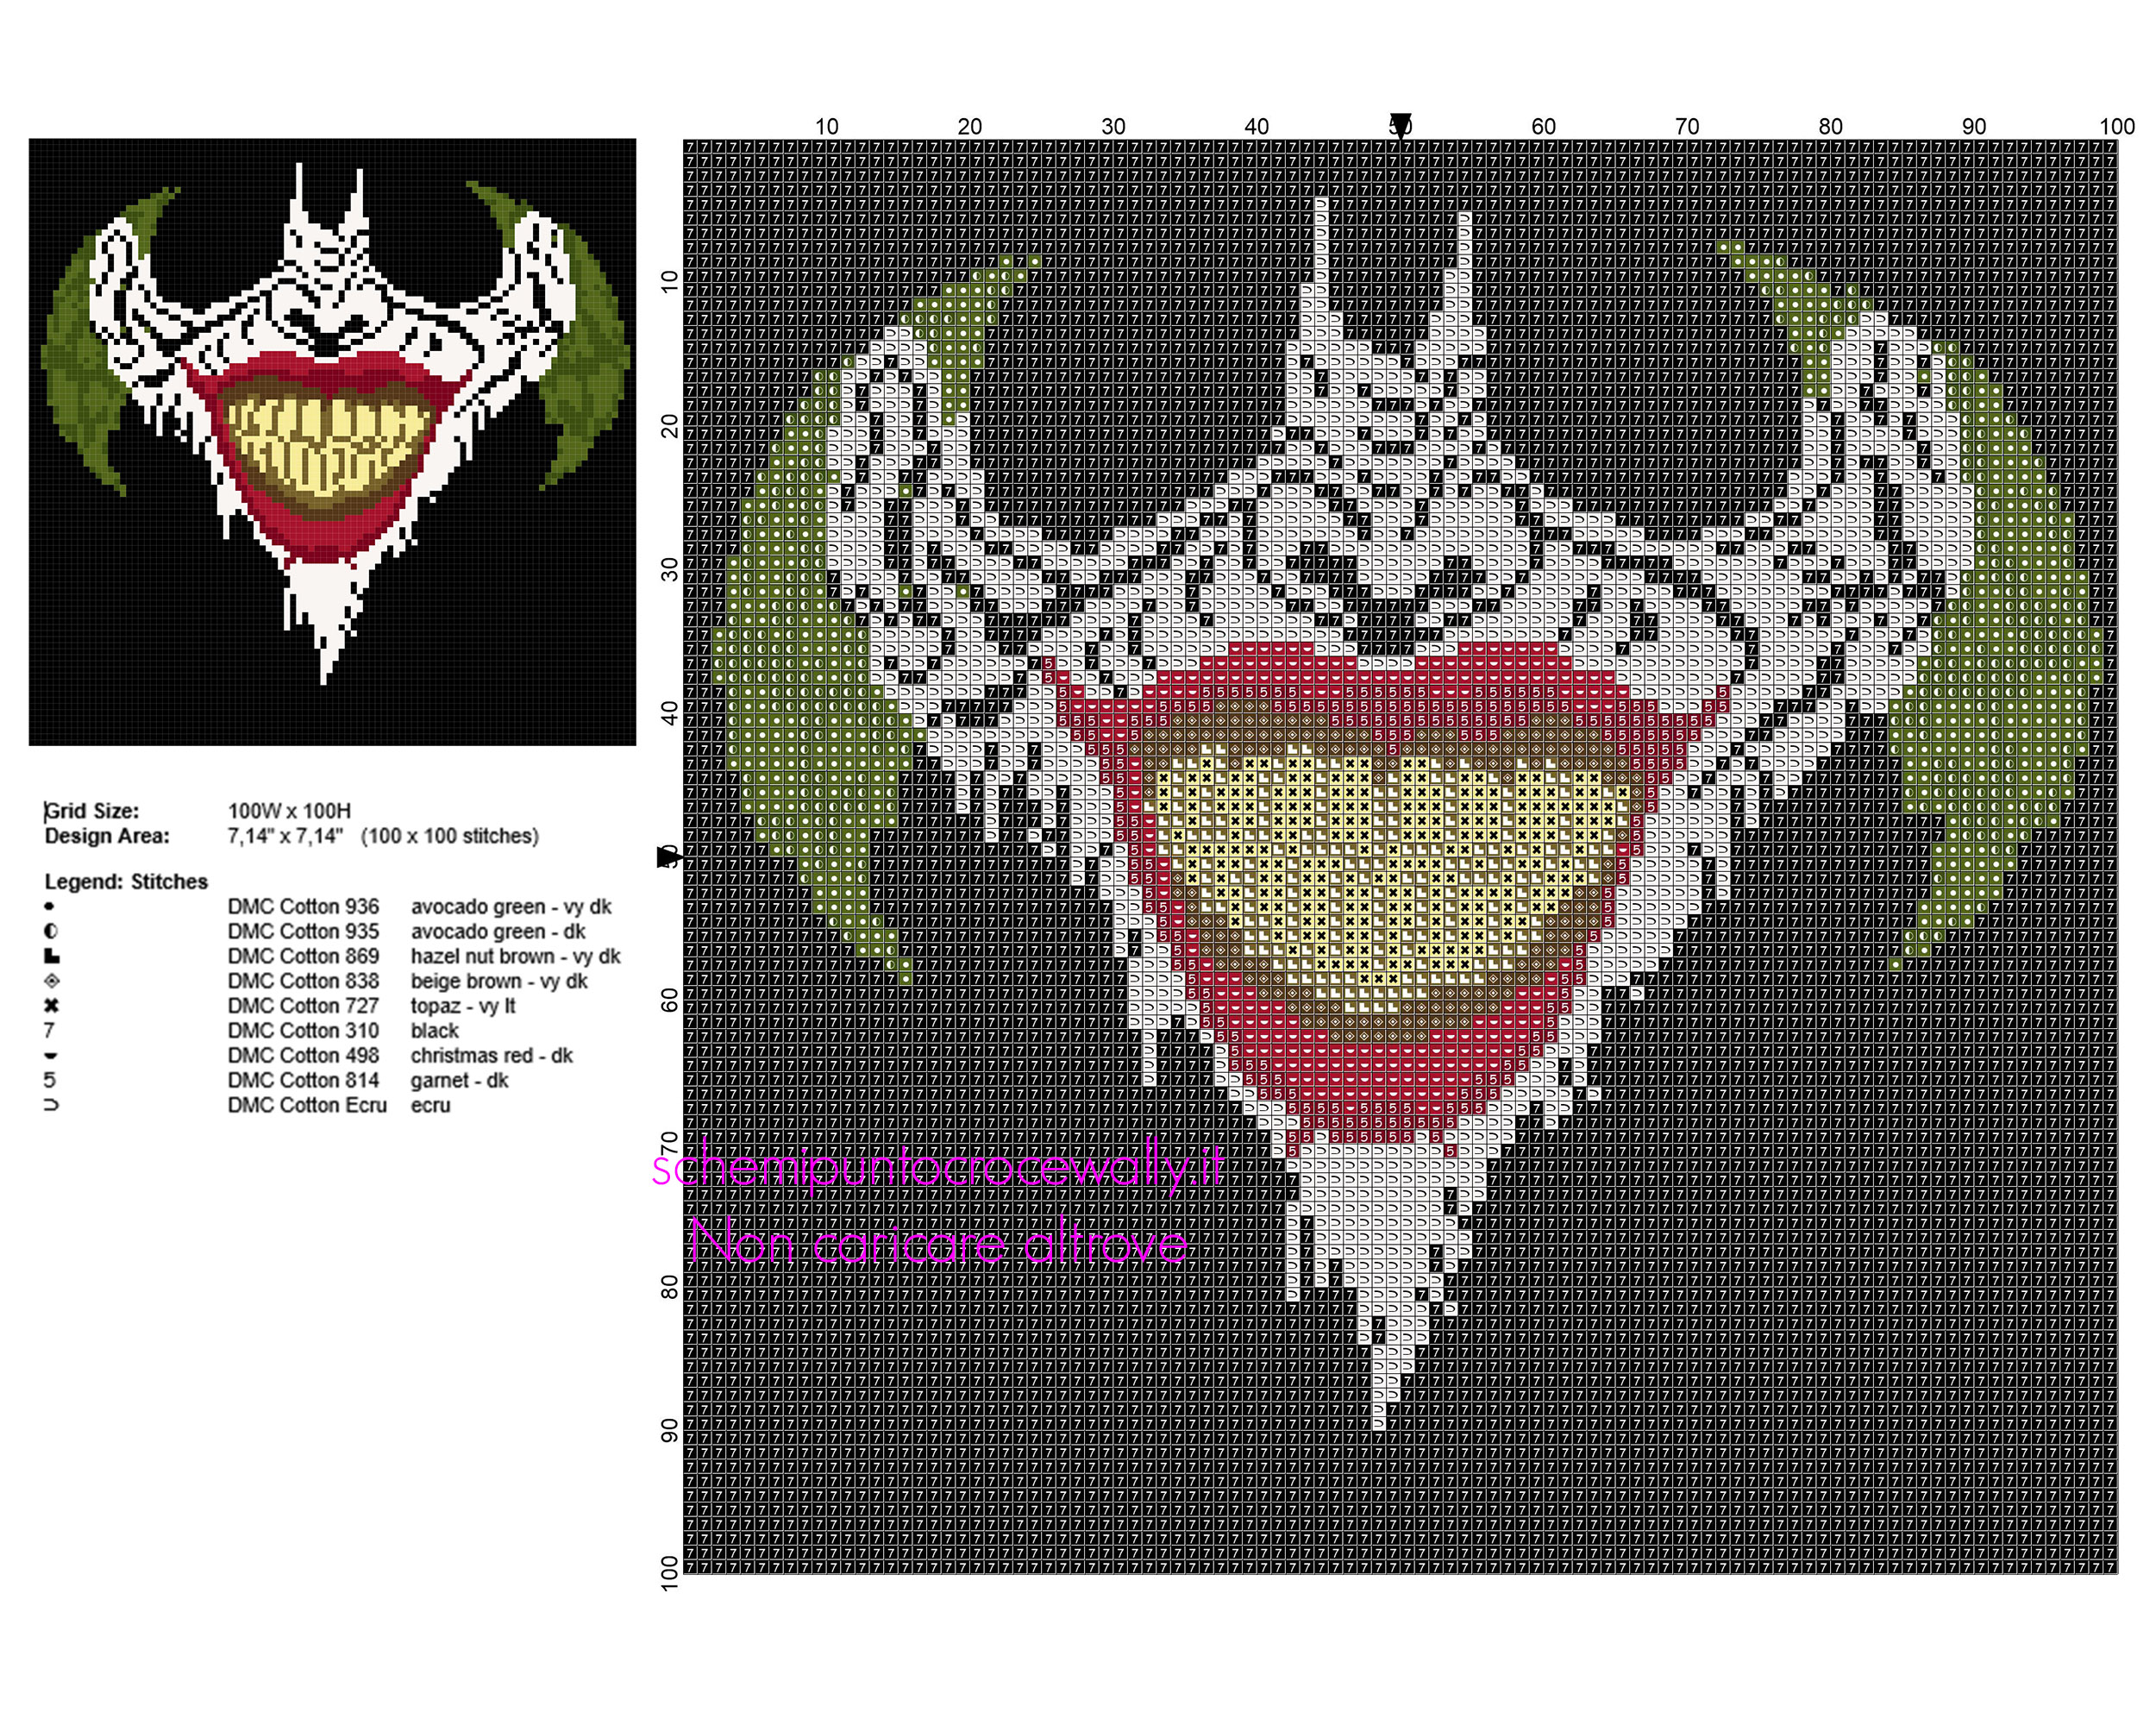 Schema punto croce il volto di Joker download gratuito dimensioni 100 x 100 crocette